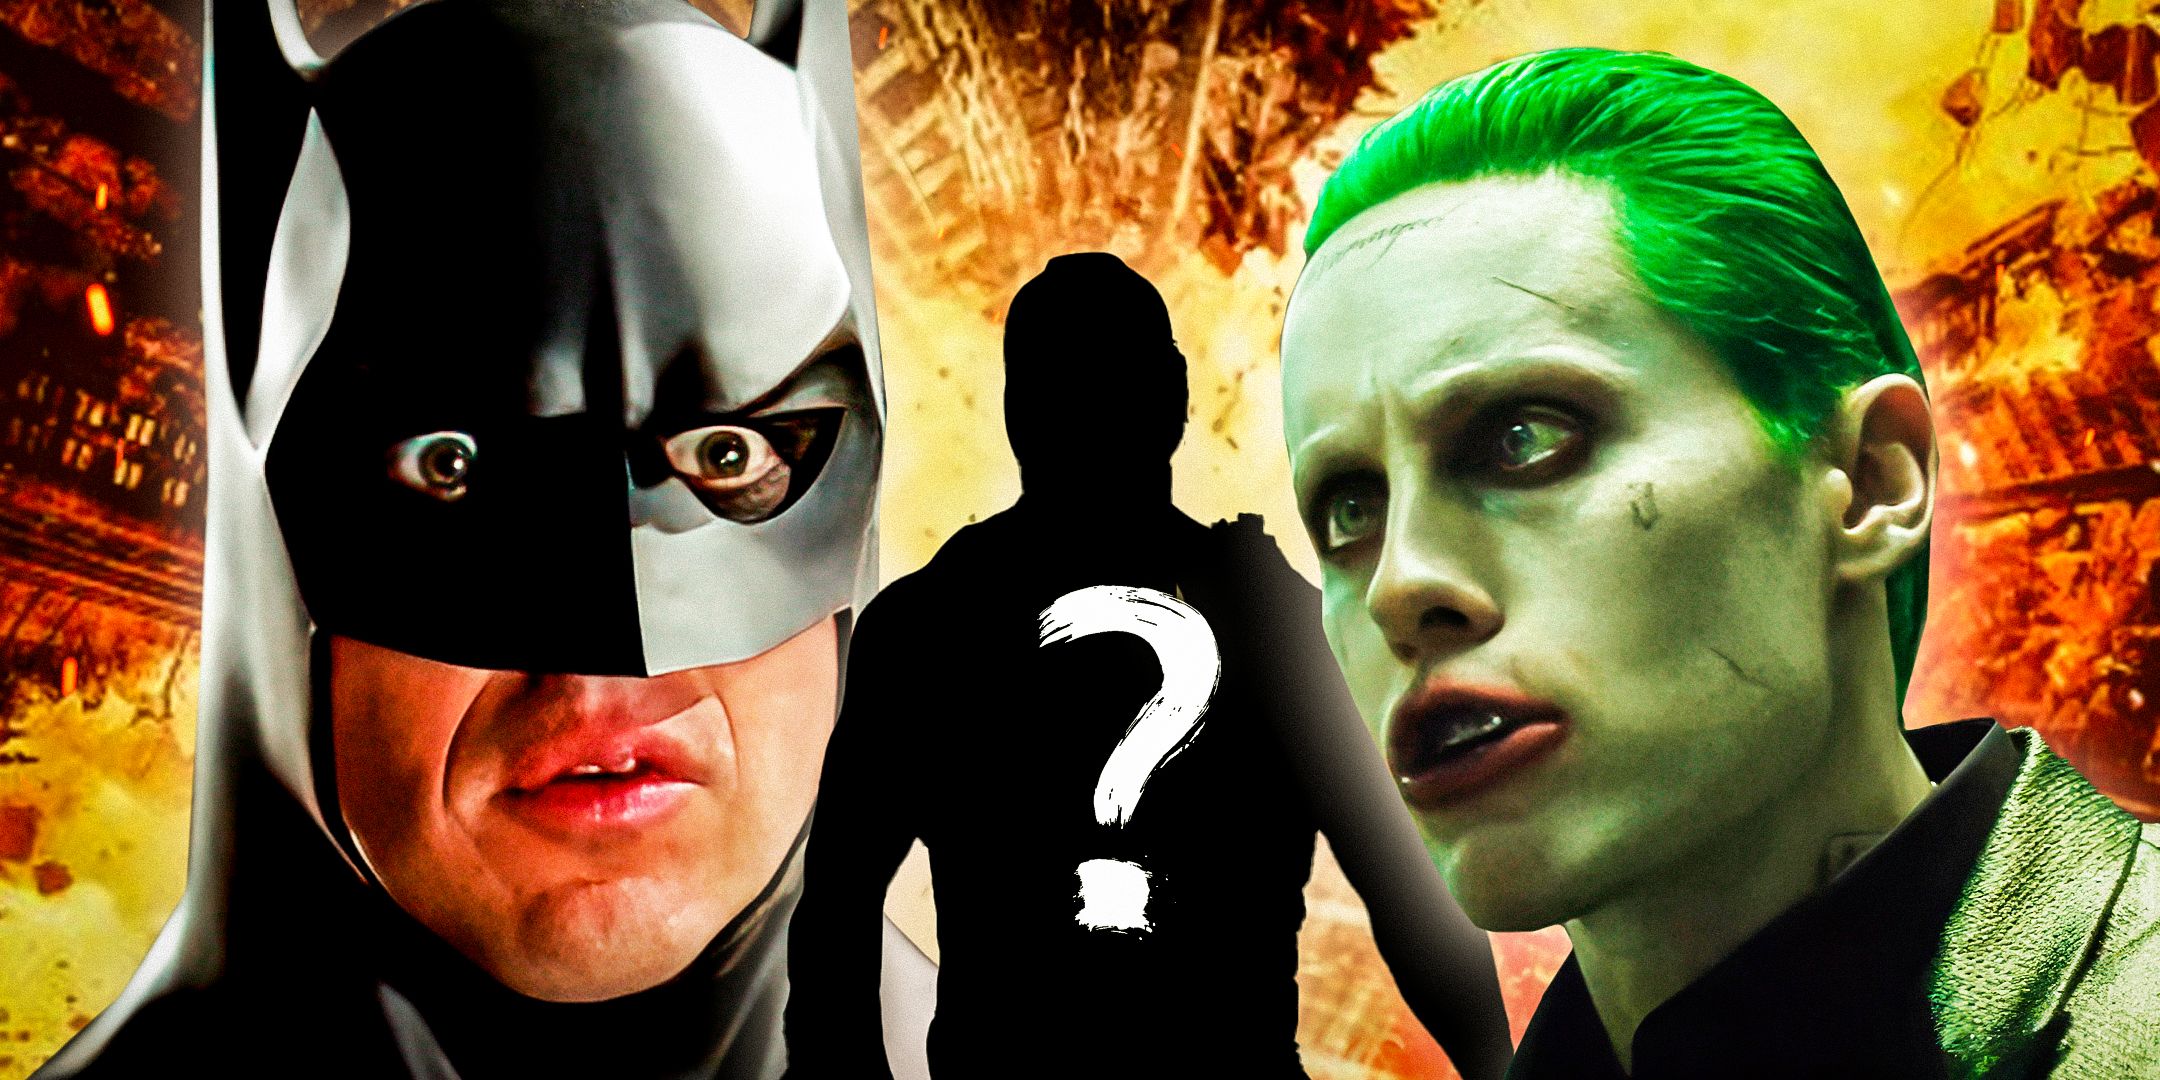 Un próximo lanzamiento de DC continuará la extraña redención de un villano de Batman 2 películas arruinadas